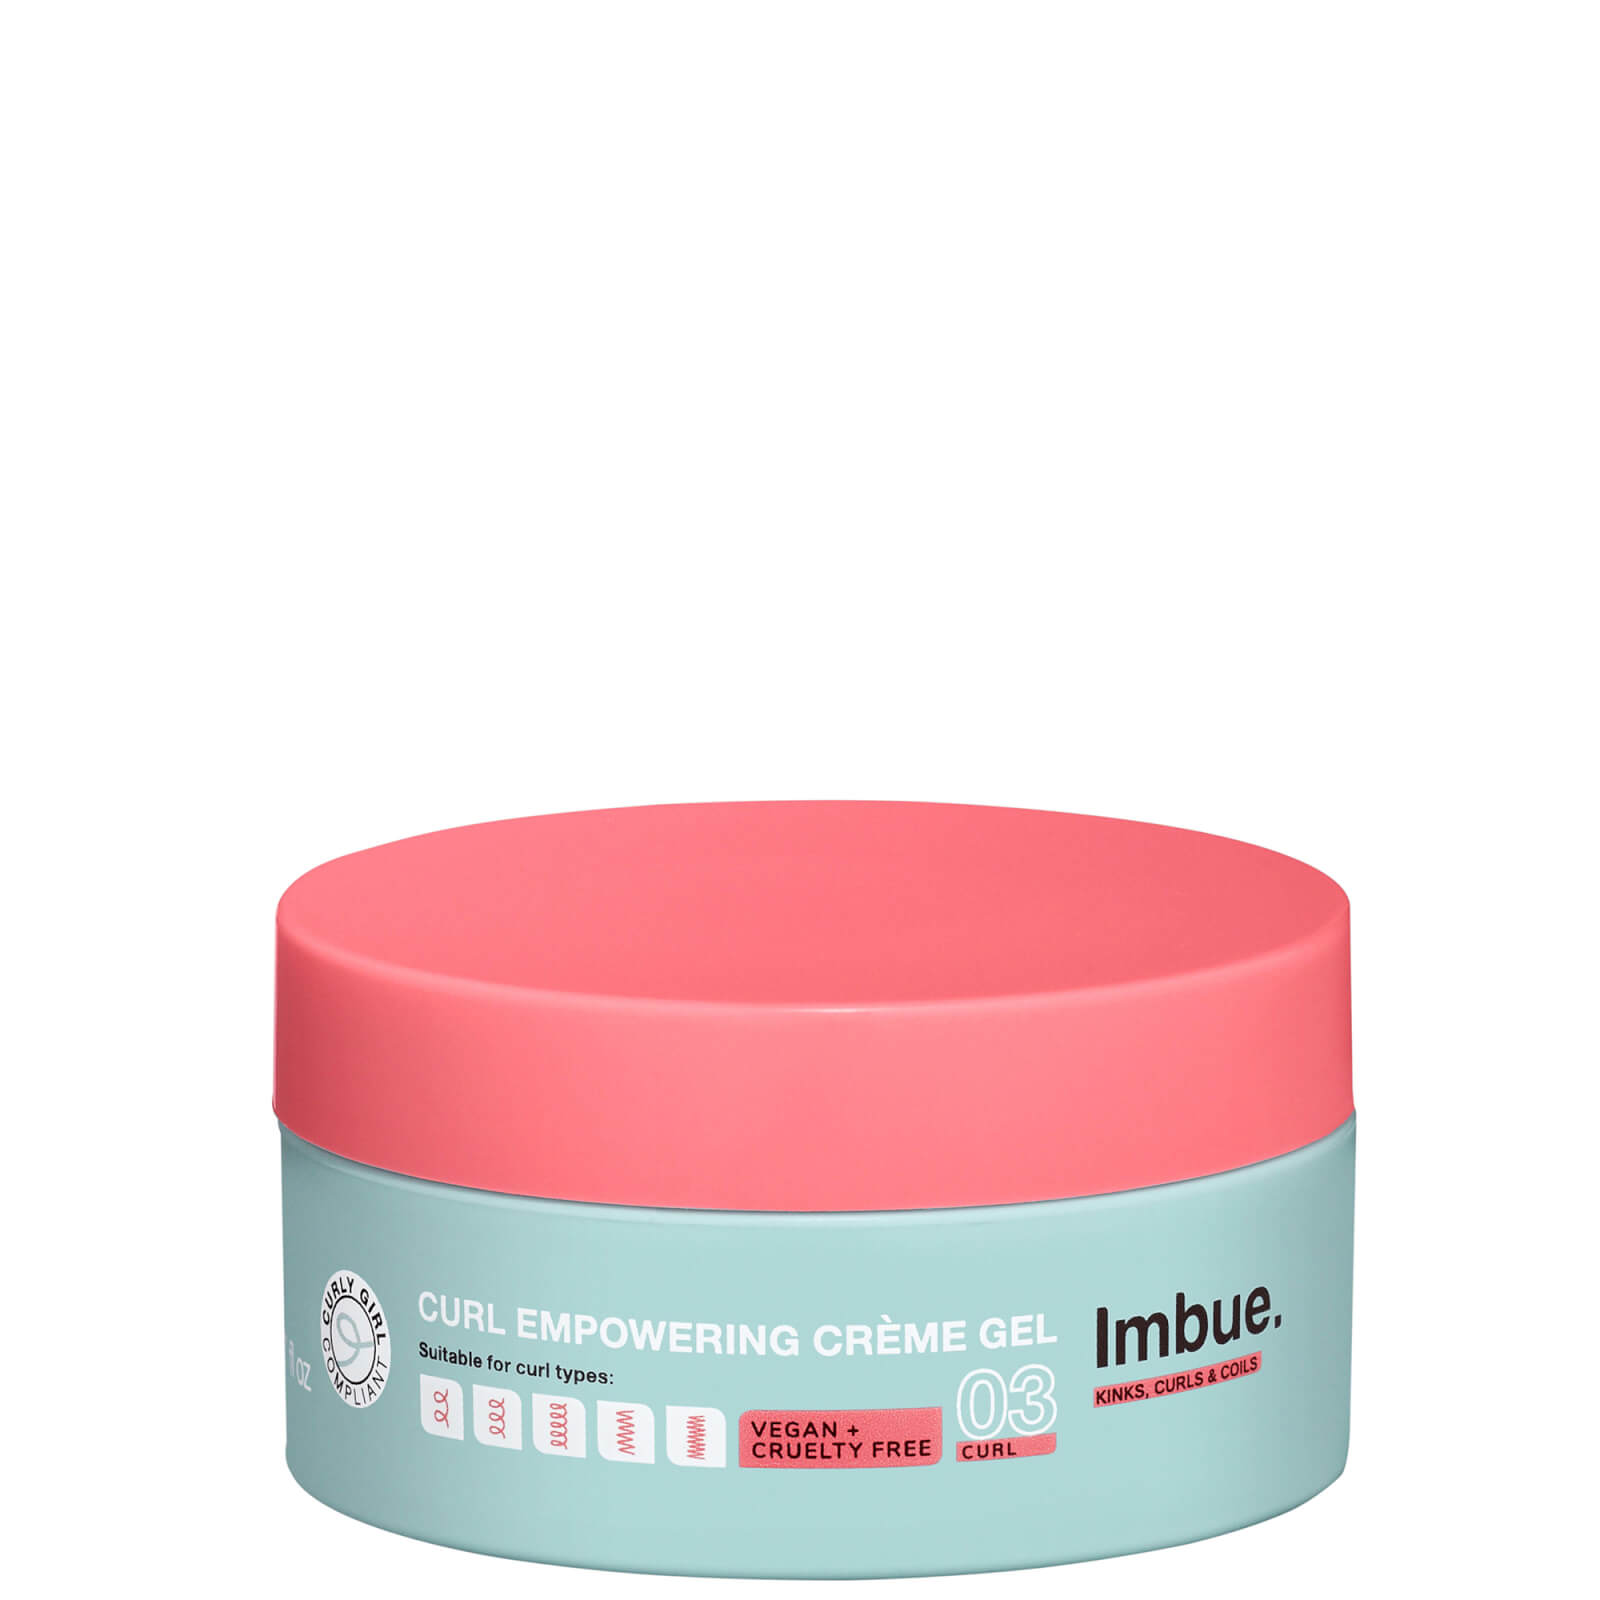 Imbue Curl Empowering Creme Gel 200ml